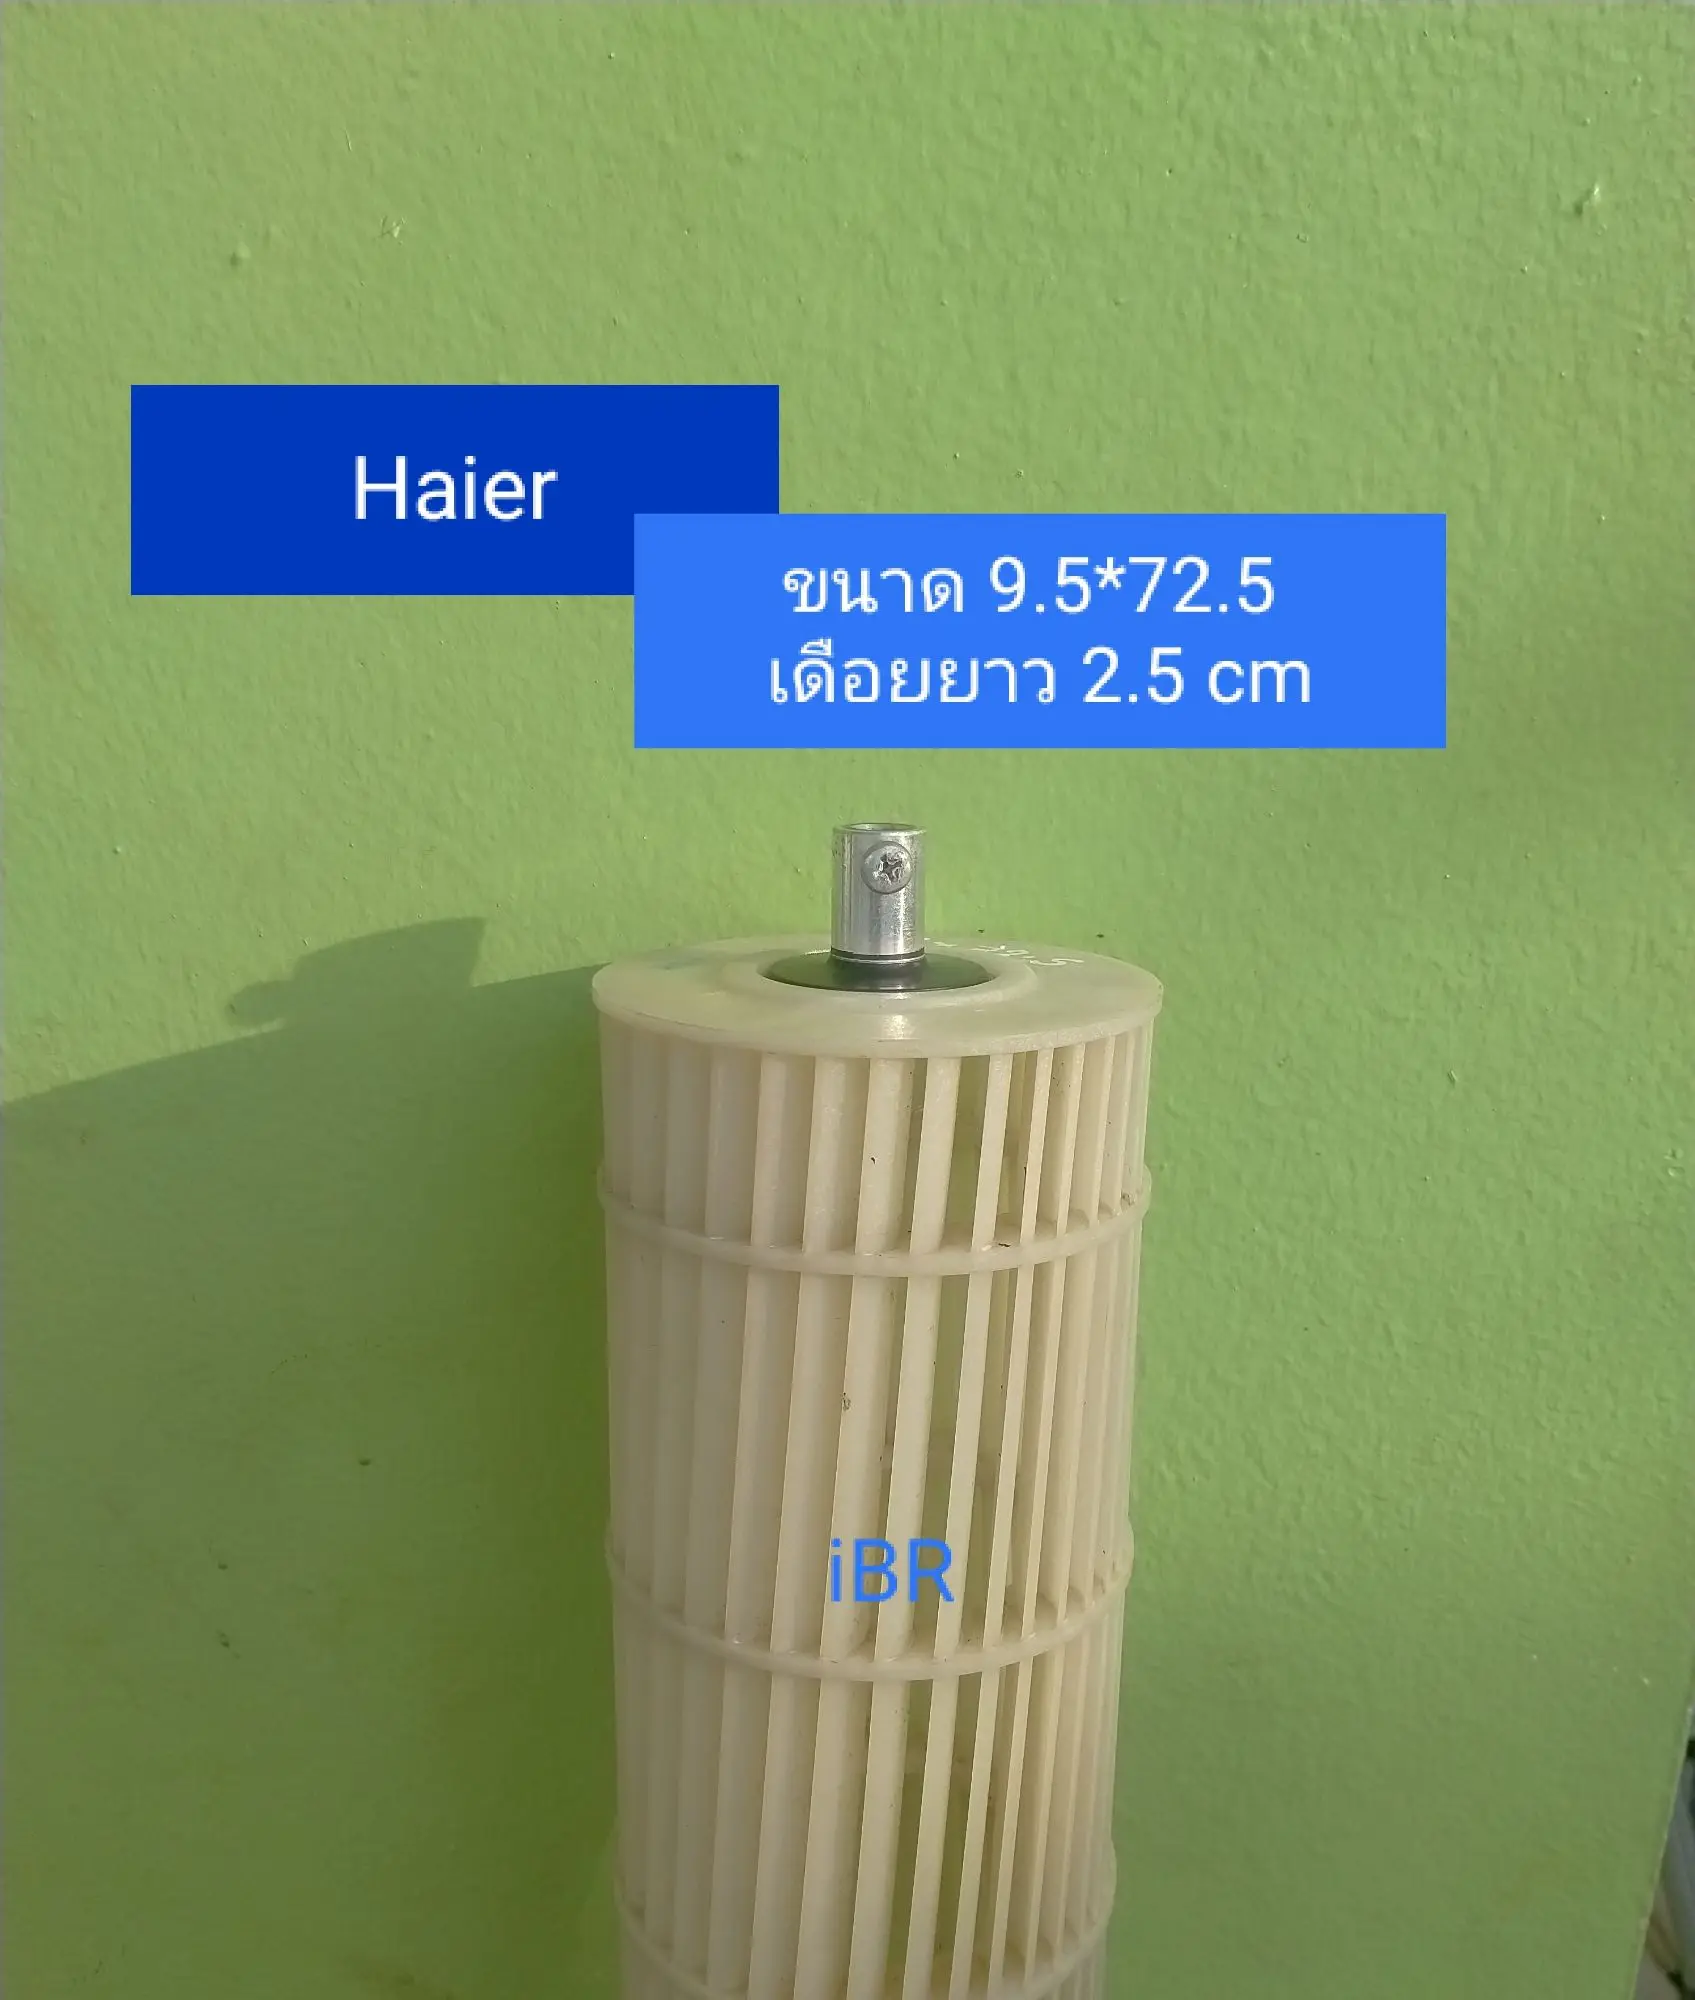 ใบพัดลมคอยล์เย็นแอร์ Haier (9.5*72.5 cm) ล๊อคนอก เดือยยาว 2 .5 cm. **อะไหล่แท้ อะไหล่ถอด